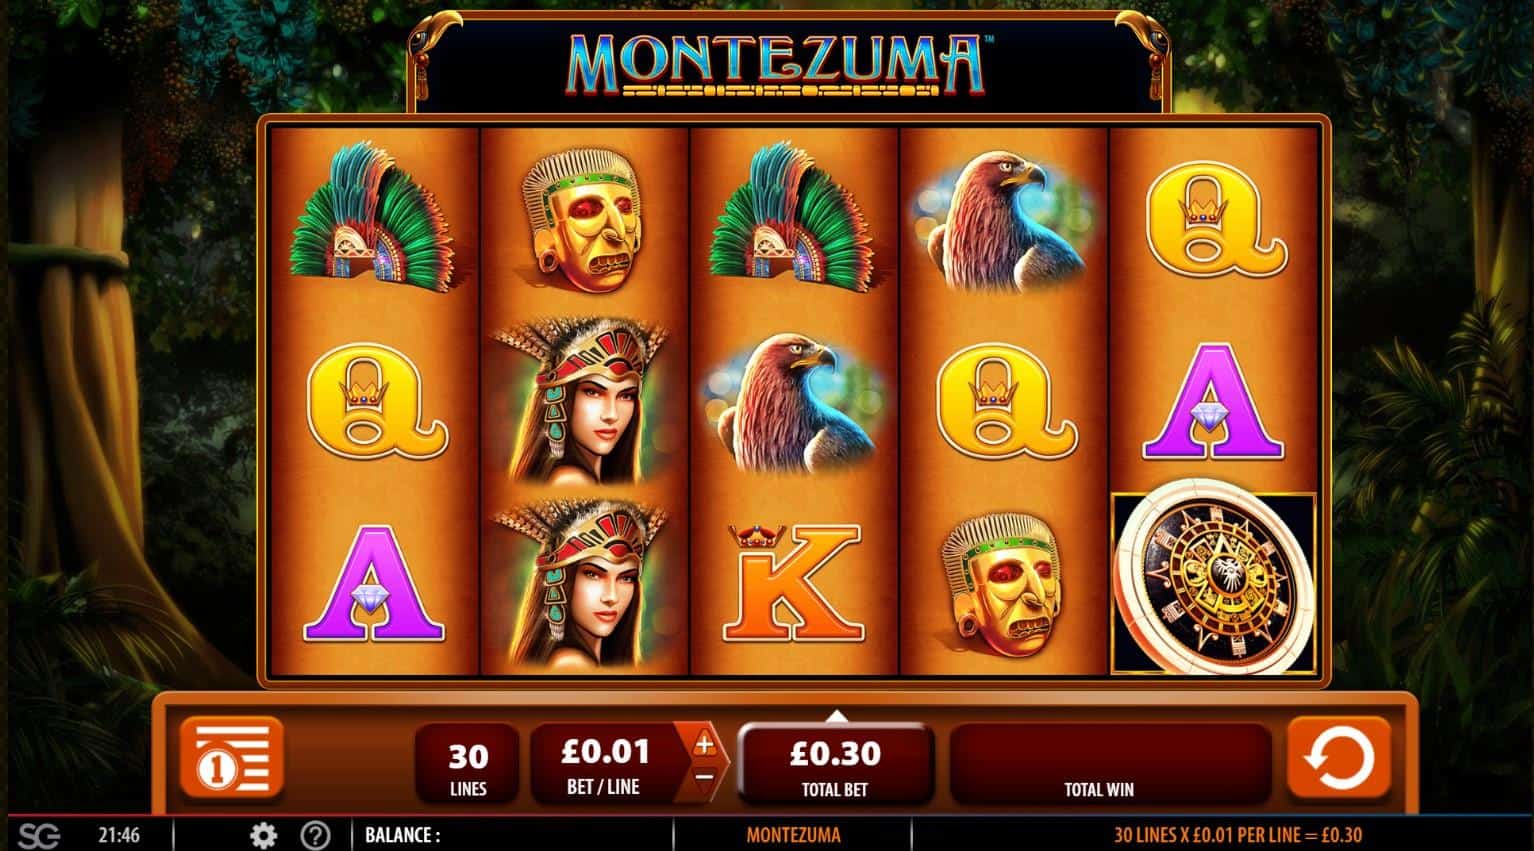 Montezuma Slot Game Review SG Digital E-Vegas.com